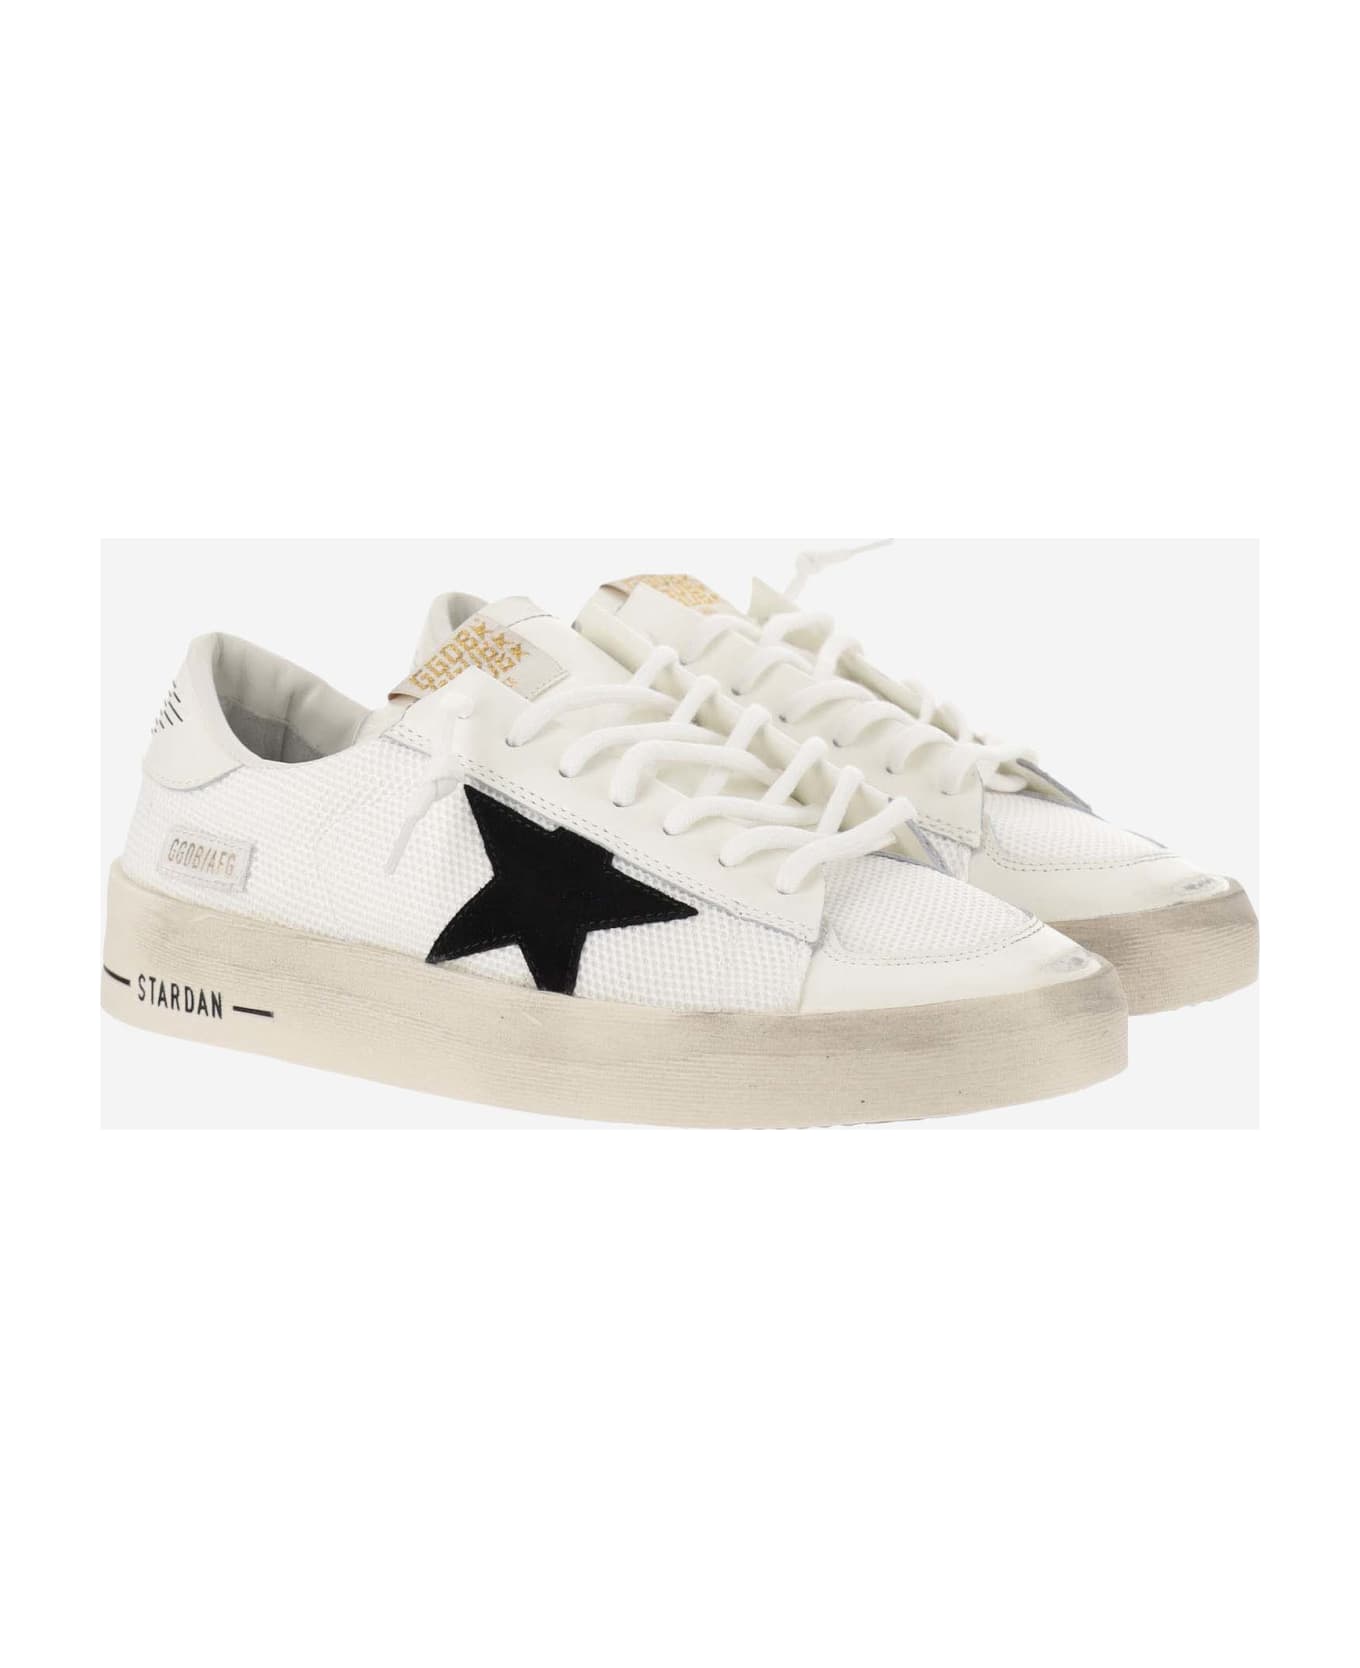 Golden Goose Stardan Sneakers - White スニーカー